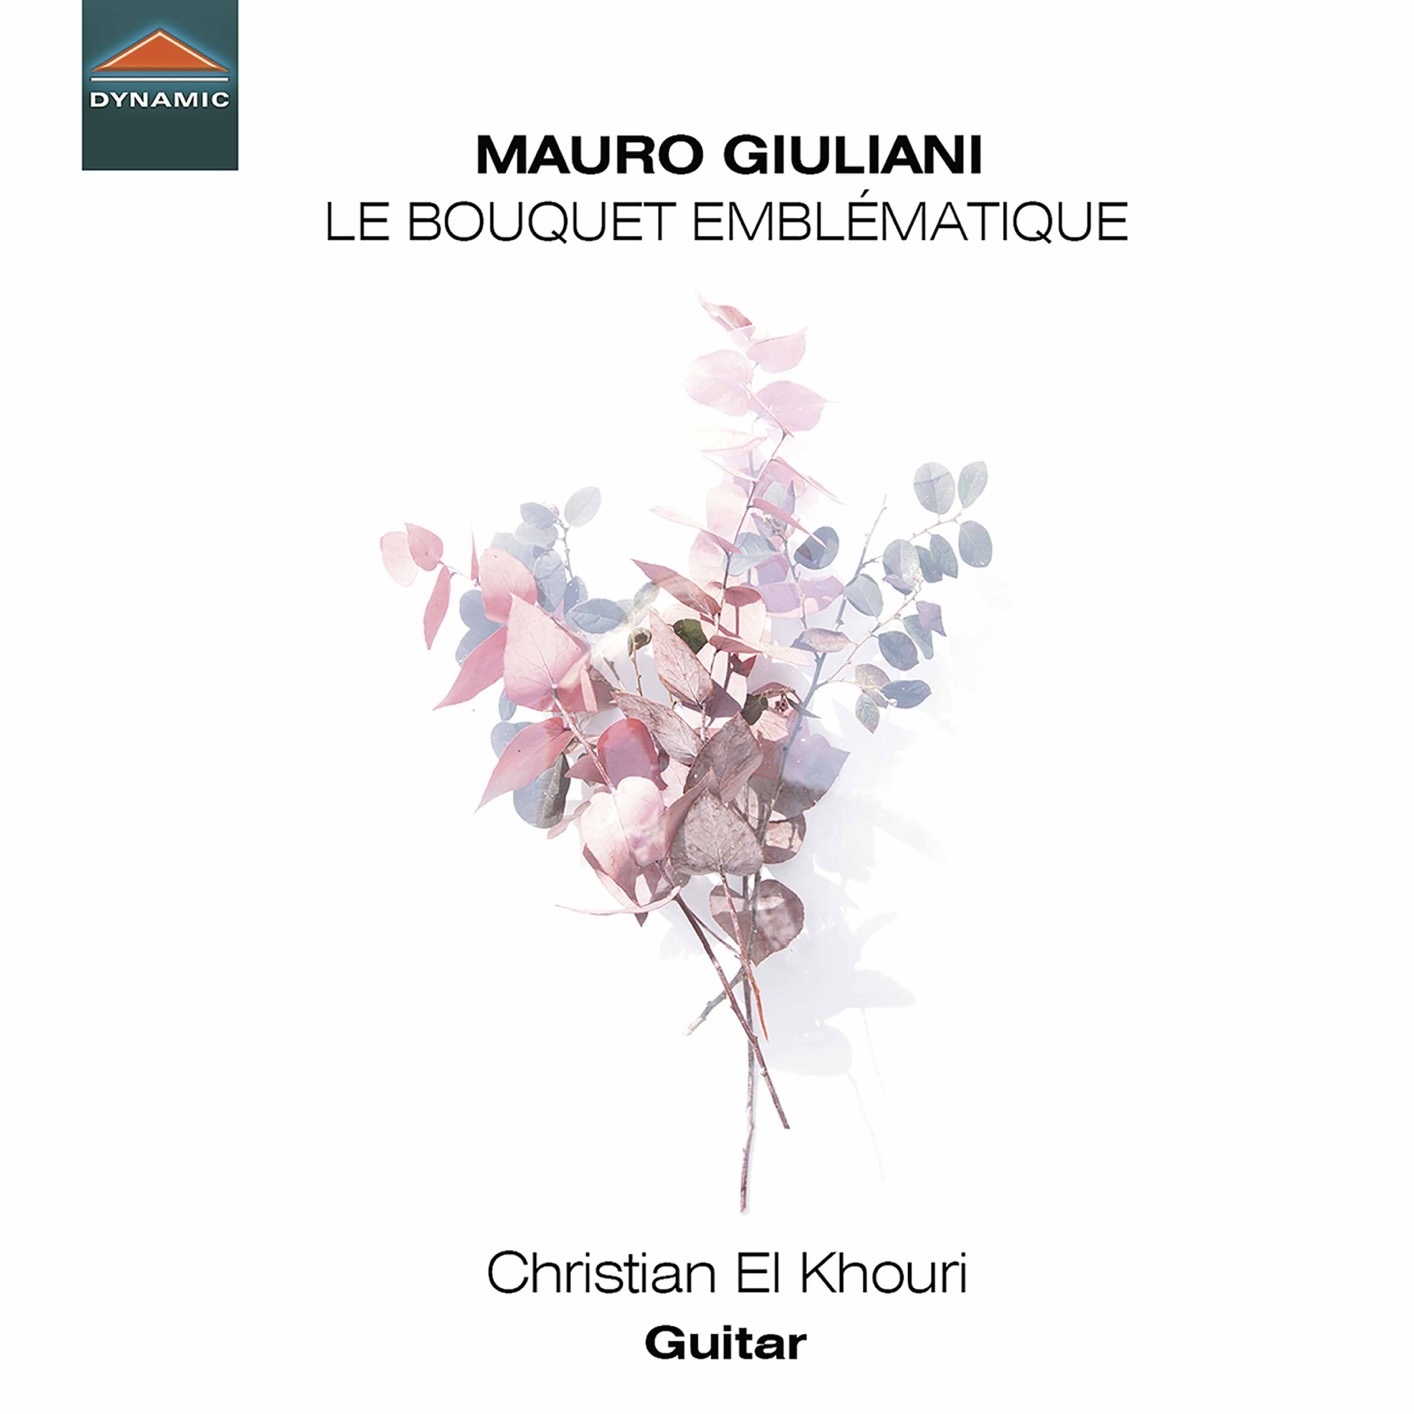 Christian El Khouri - Le bouquet emblematique (2020) [FLAC 24bit/96kHz]